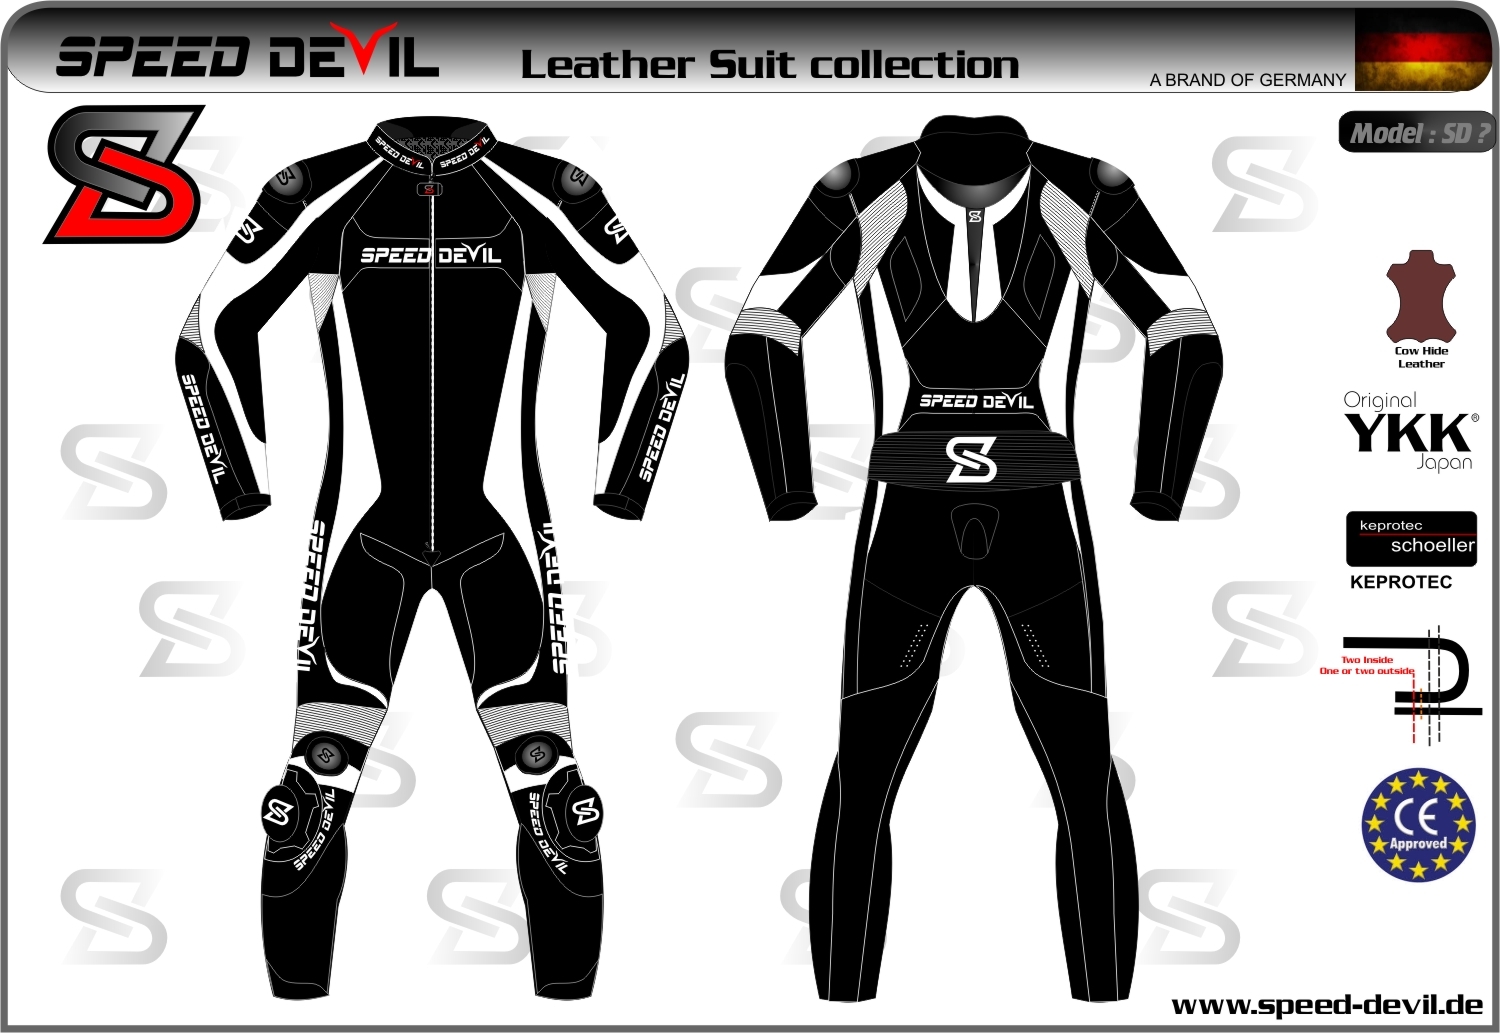 SD_suit_Design_1_-_3